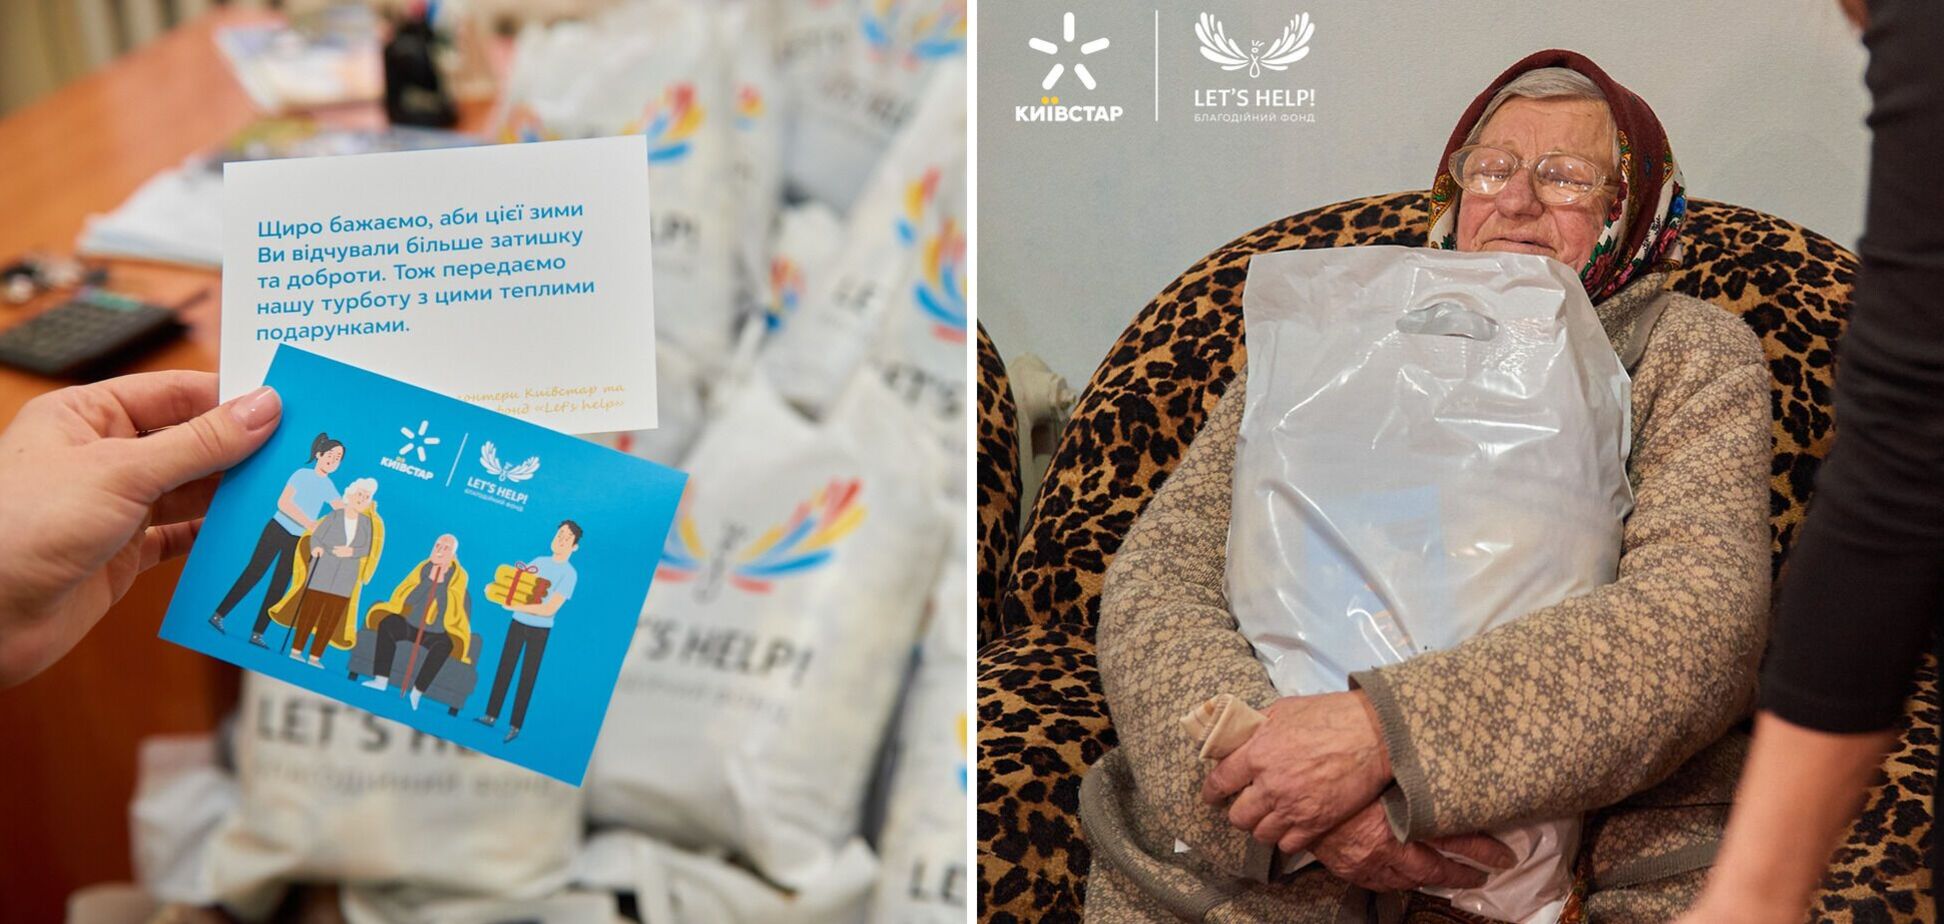 'Киевстар' вместе с волонтерами передали 1 млн грн на теплые вещи для пожилых людей